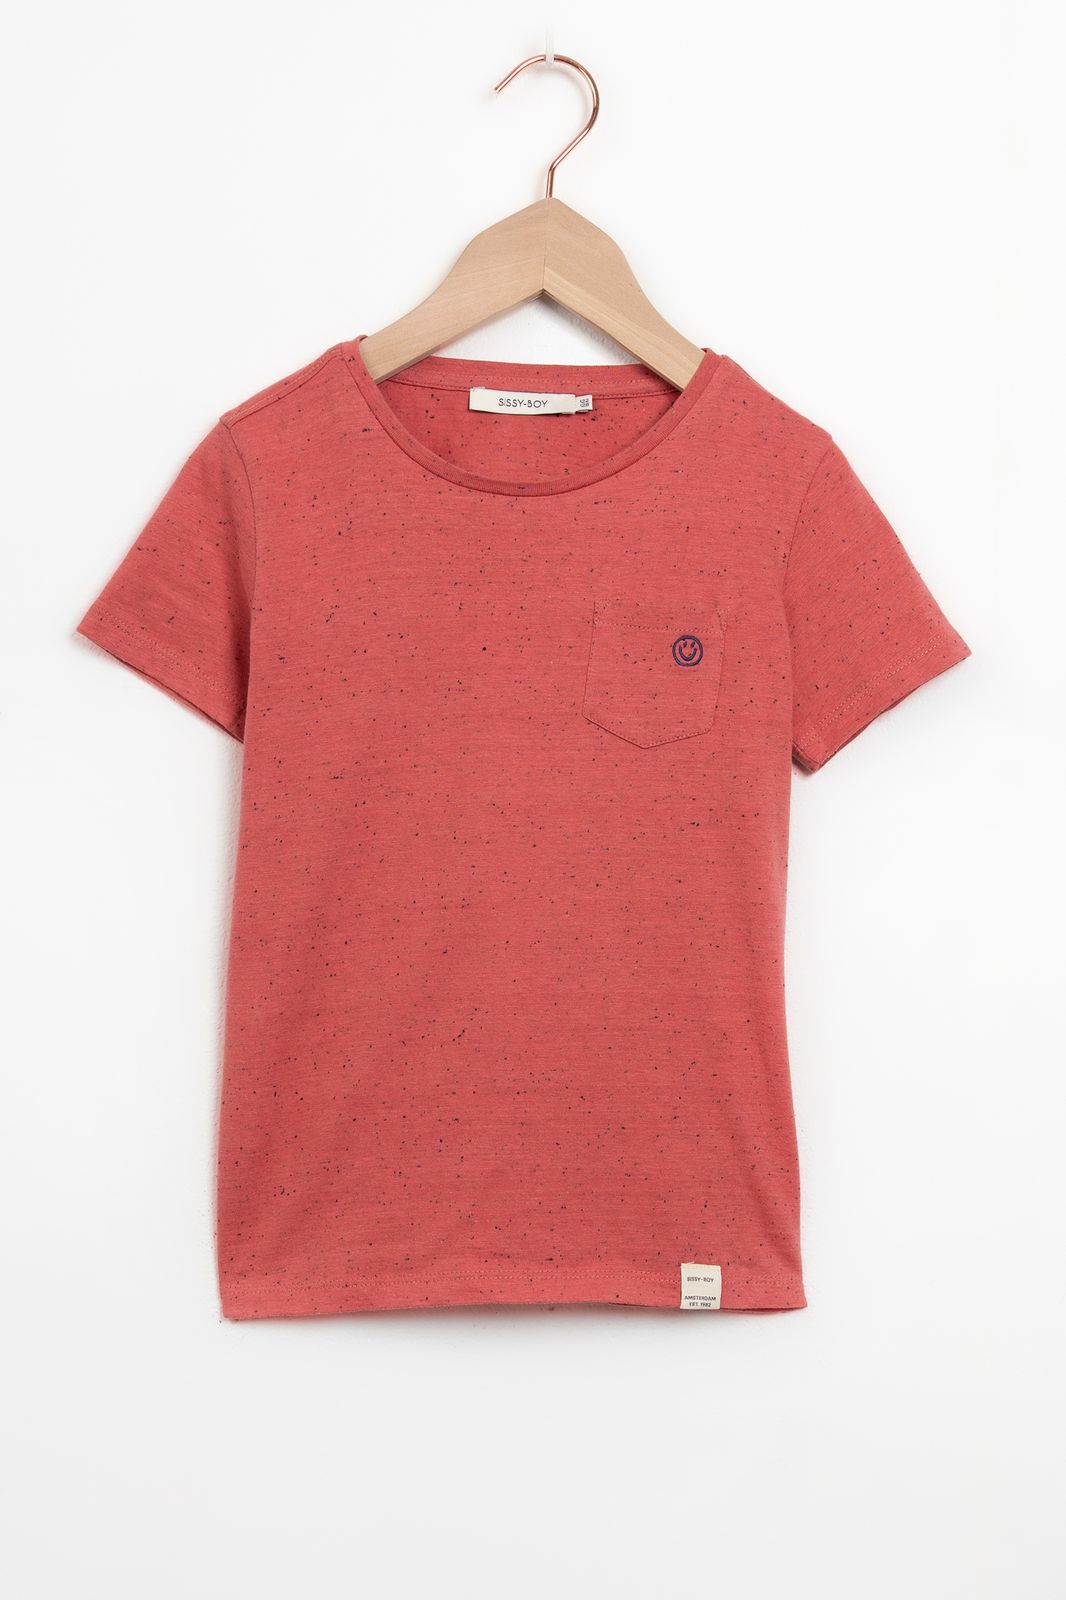 Weiches Knötchen-Shirt mit Smiley - rot